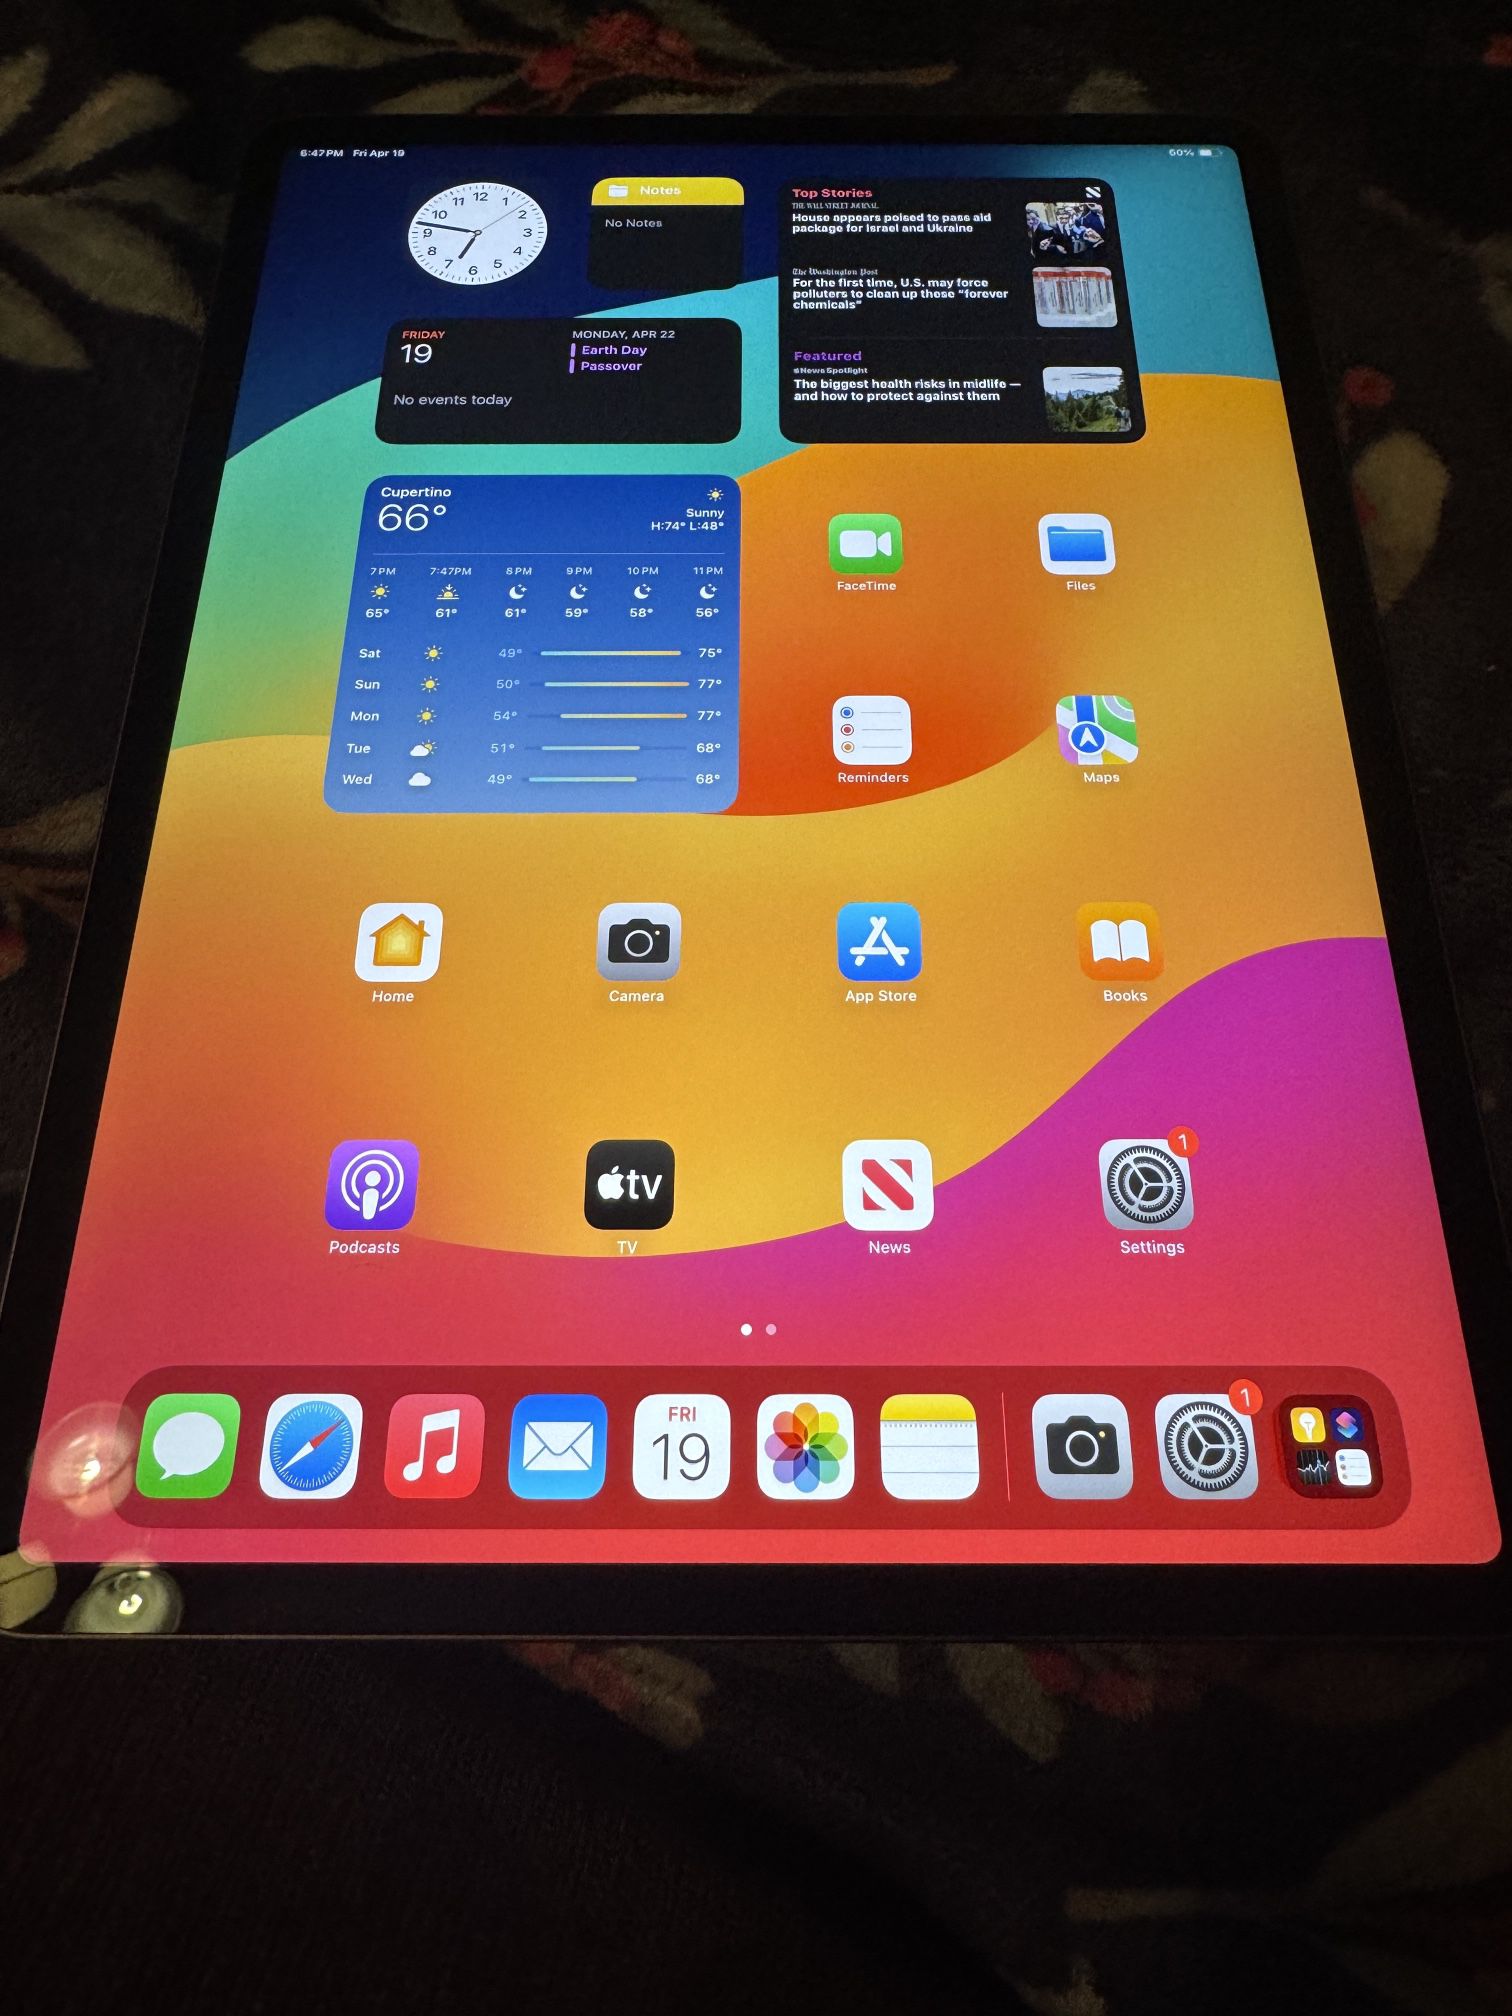 iPad Pro 12.9 5th Gen